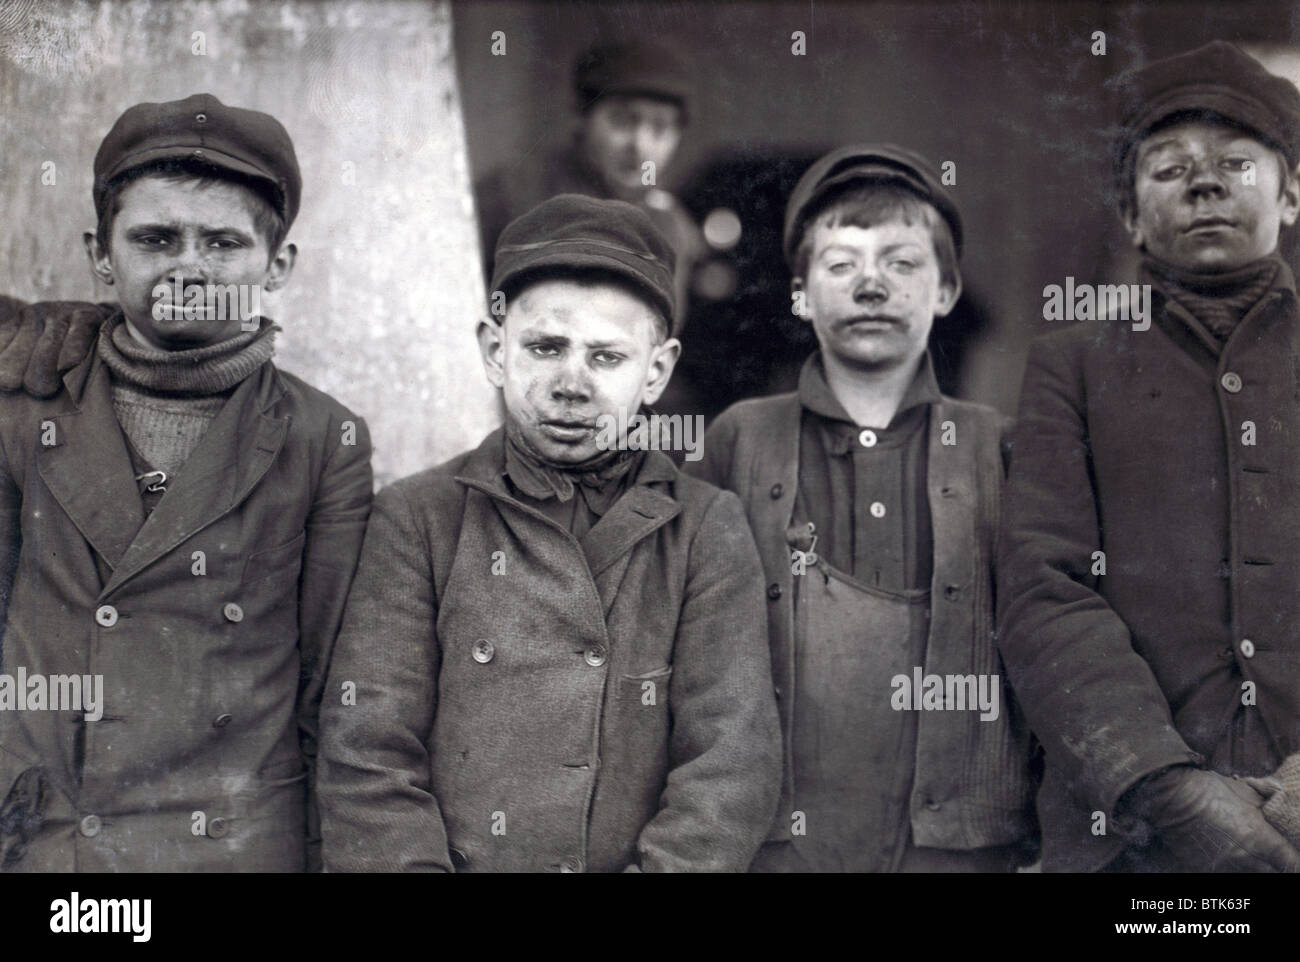 Enfants Travailleurs interprété par Lewis Hine en 1911. Couvertes de poussière de Breaker les garçons à la mine de charbon de Pennsylvanie, New Jersey, Pittston. Janvier, 1911 Banque D'Images